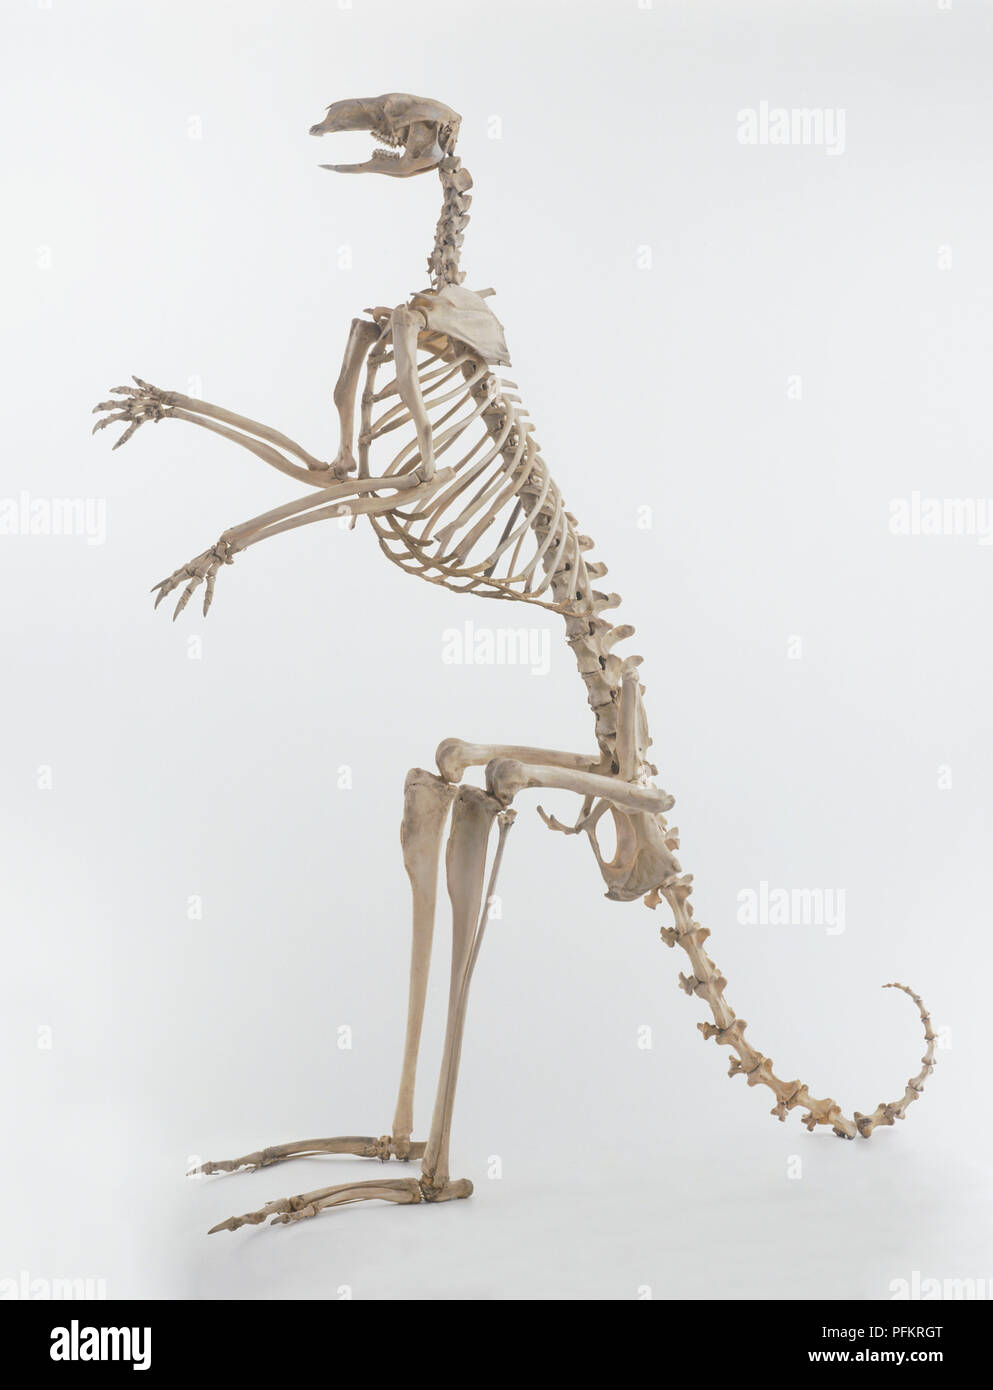 Kangaroo (Macropus), skeleton, side view Stock Photo